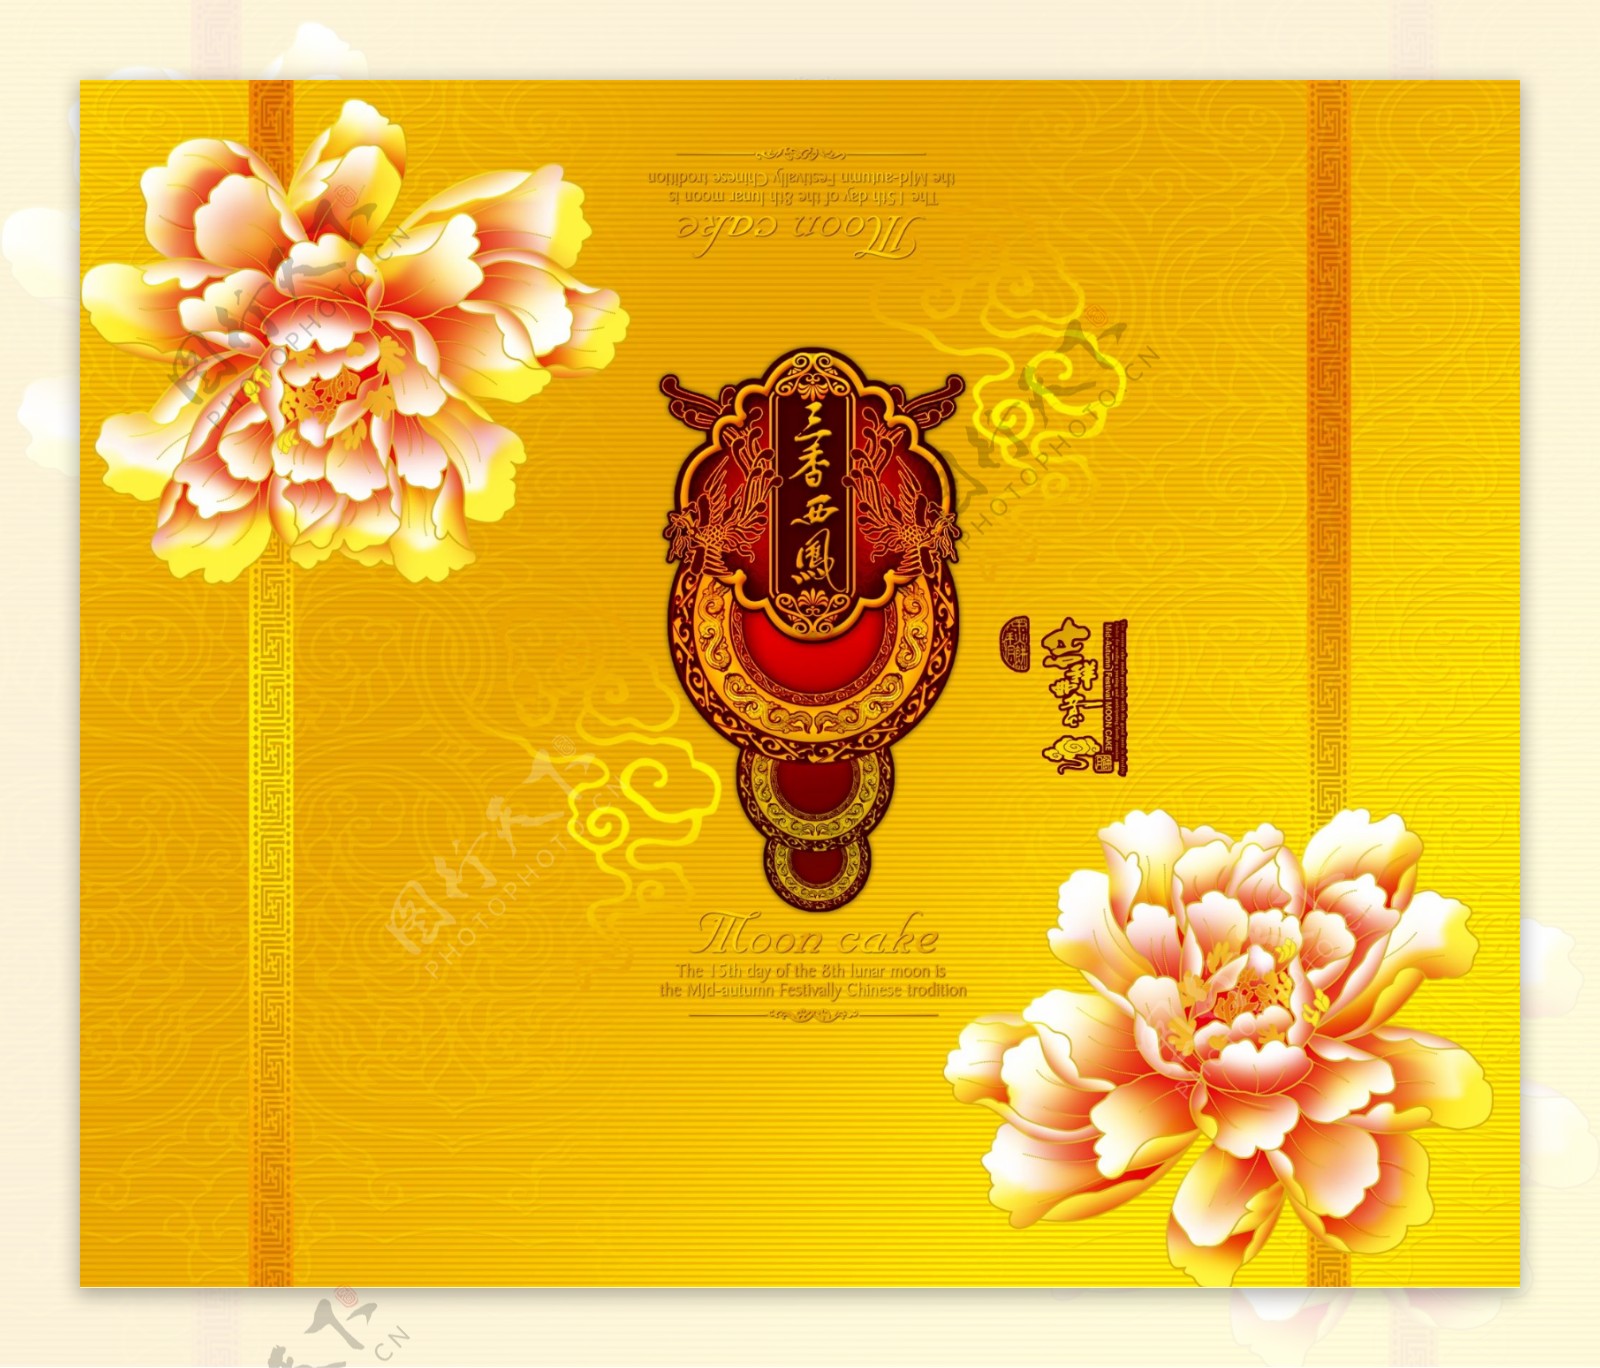 中秋月饼礼盒包装设计图片